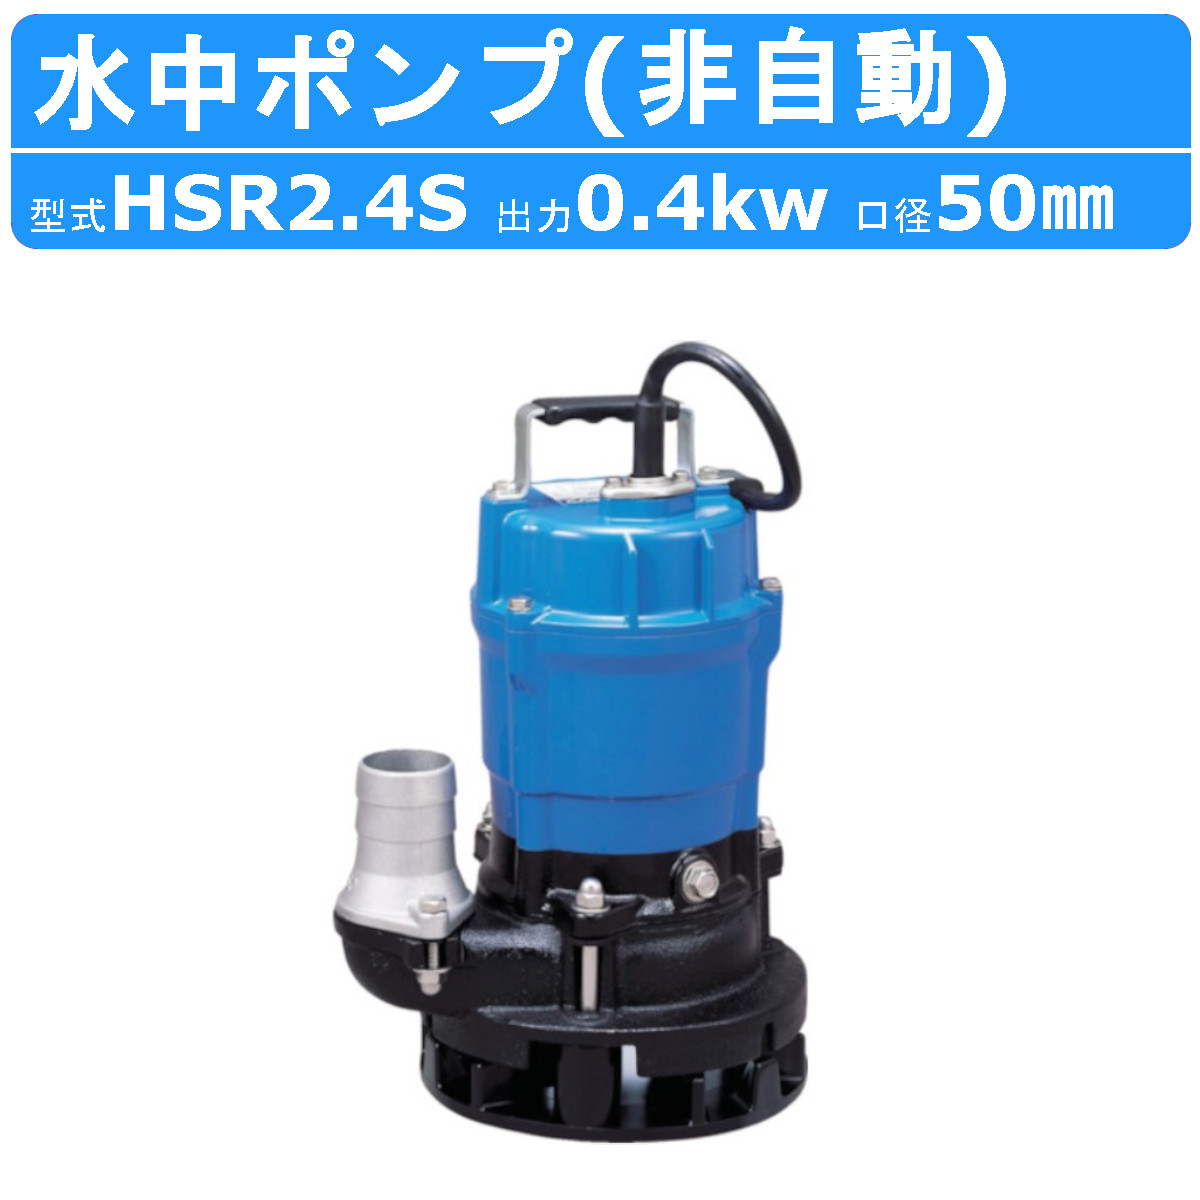 ツルミ 水中ポンプ HSN2.4S-61-